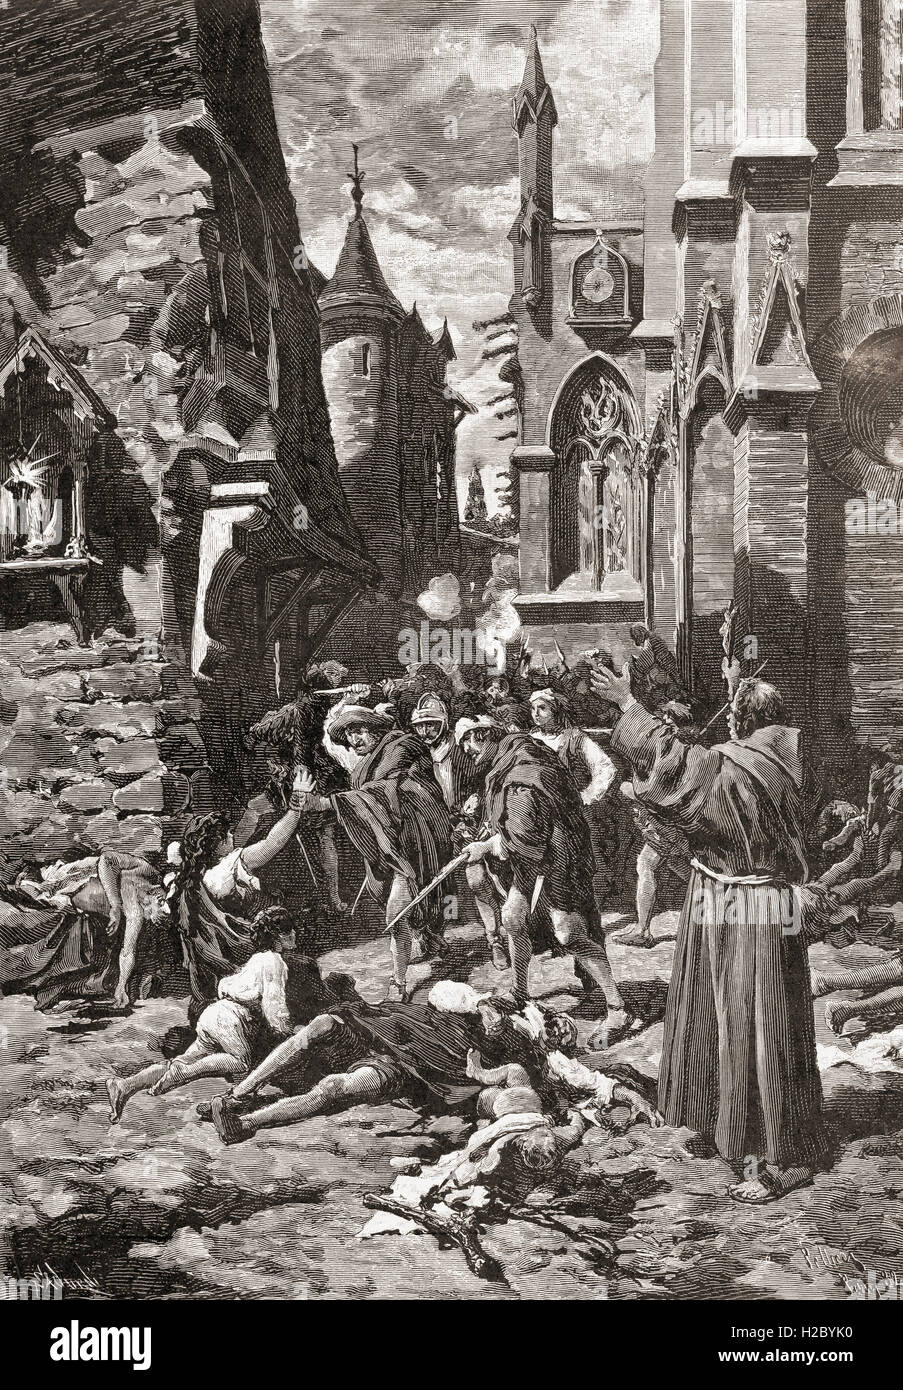 La Chiesa di San Bartolomeo del massacro di giorno a Parigi in Francia nel 1572, un gruppo mirato di assassini e un'onda di Cattolica la violenza della folla, diretto contro ugonotti (calvinista francese protestanti) durante il francese guerre di religione. Foto Stock